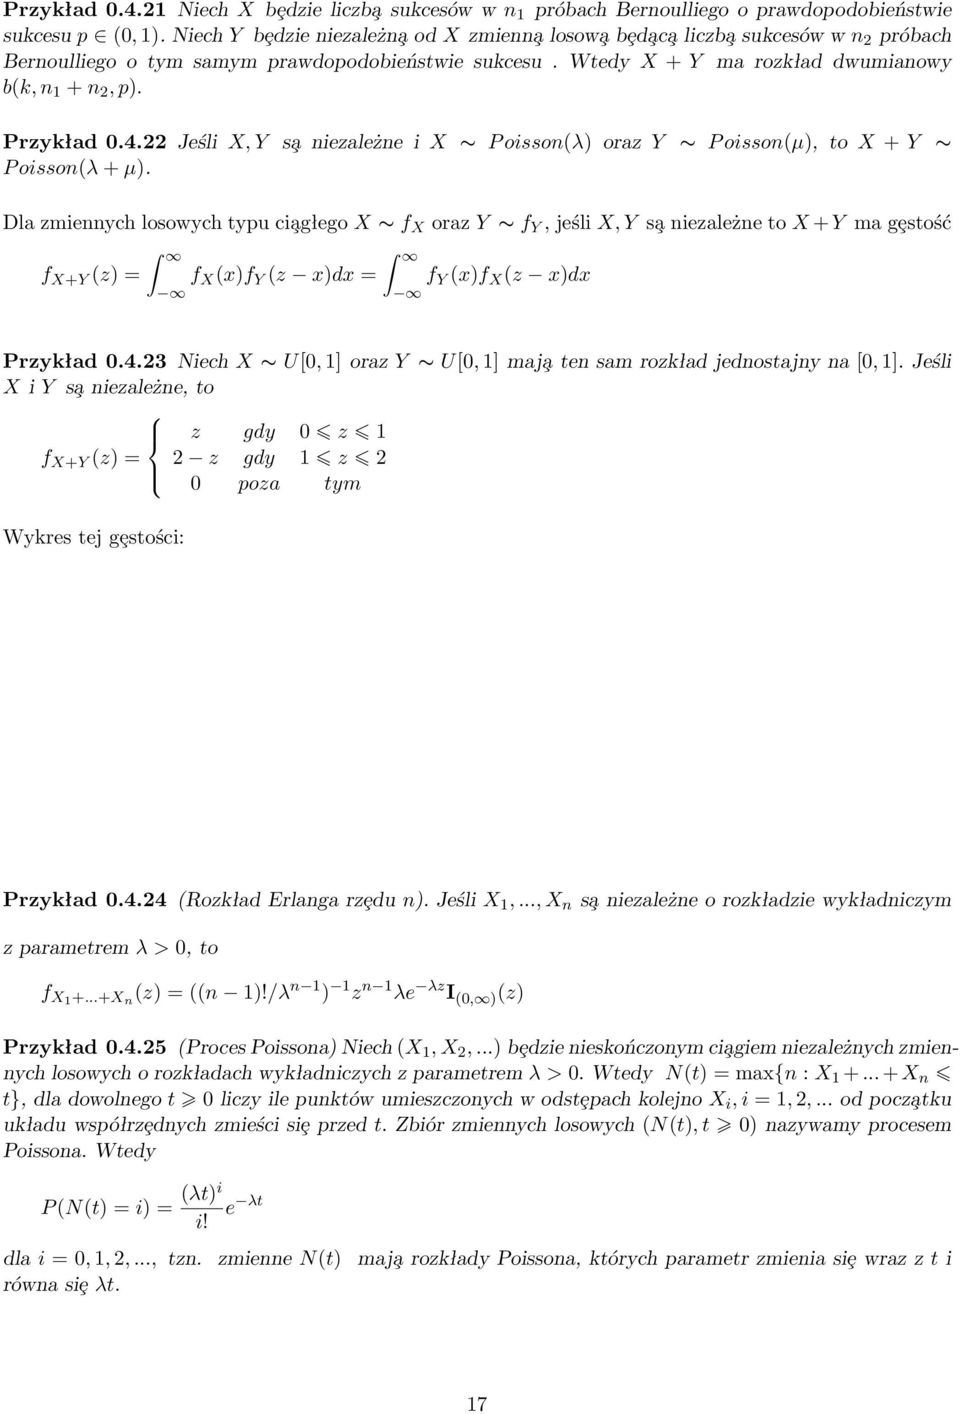 Przykład 0.4.22 Jeśli X, Y s a niezależne i X P oisson(λ) oraz Y P oisson(µ), to X + Y P oisson(λ + µ).